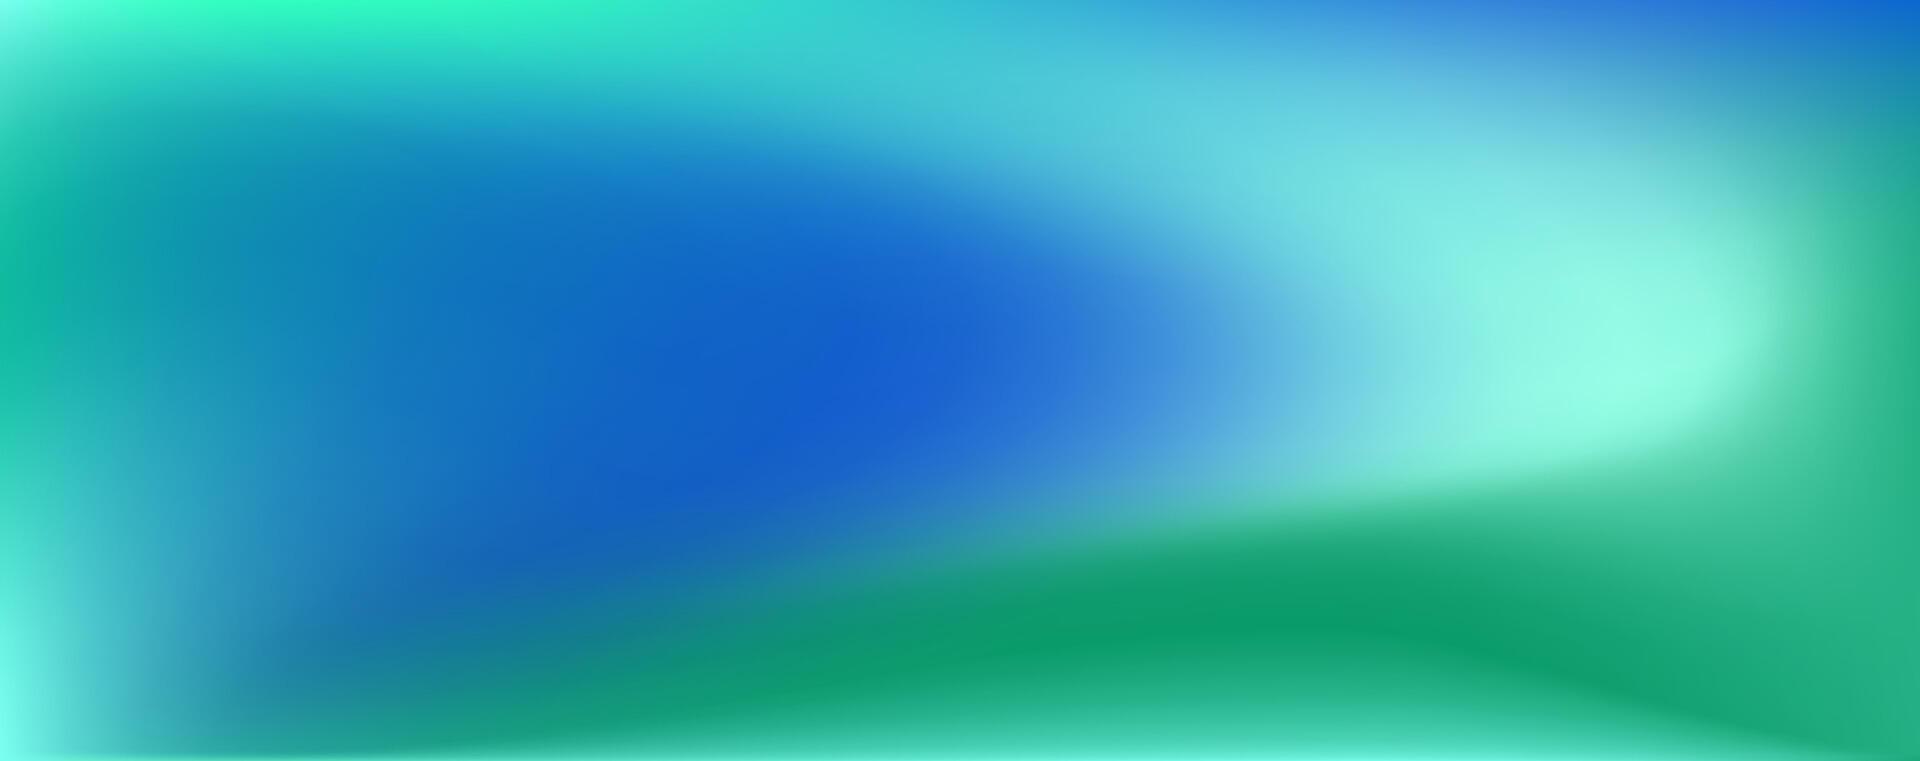 kreativ Flüssigkeit Gradient im Blau und Grün Farbe. Hintergrund modern Verdrehen Design. Meer Stil glatt Flüssigkeit. vektor